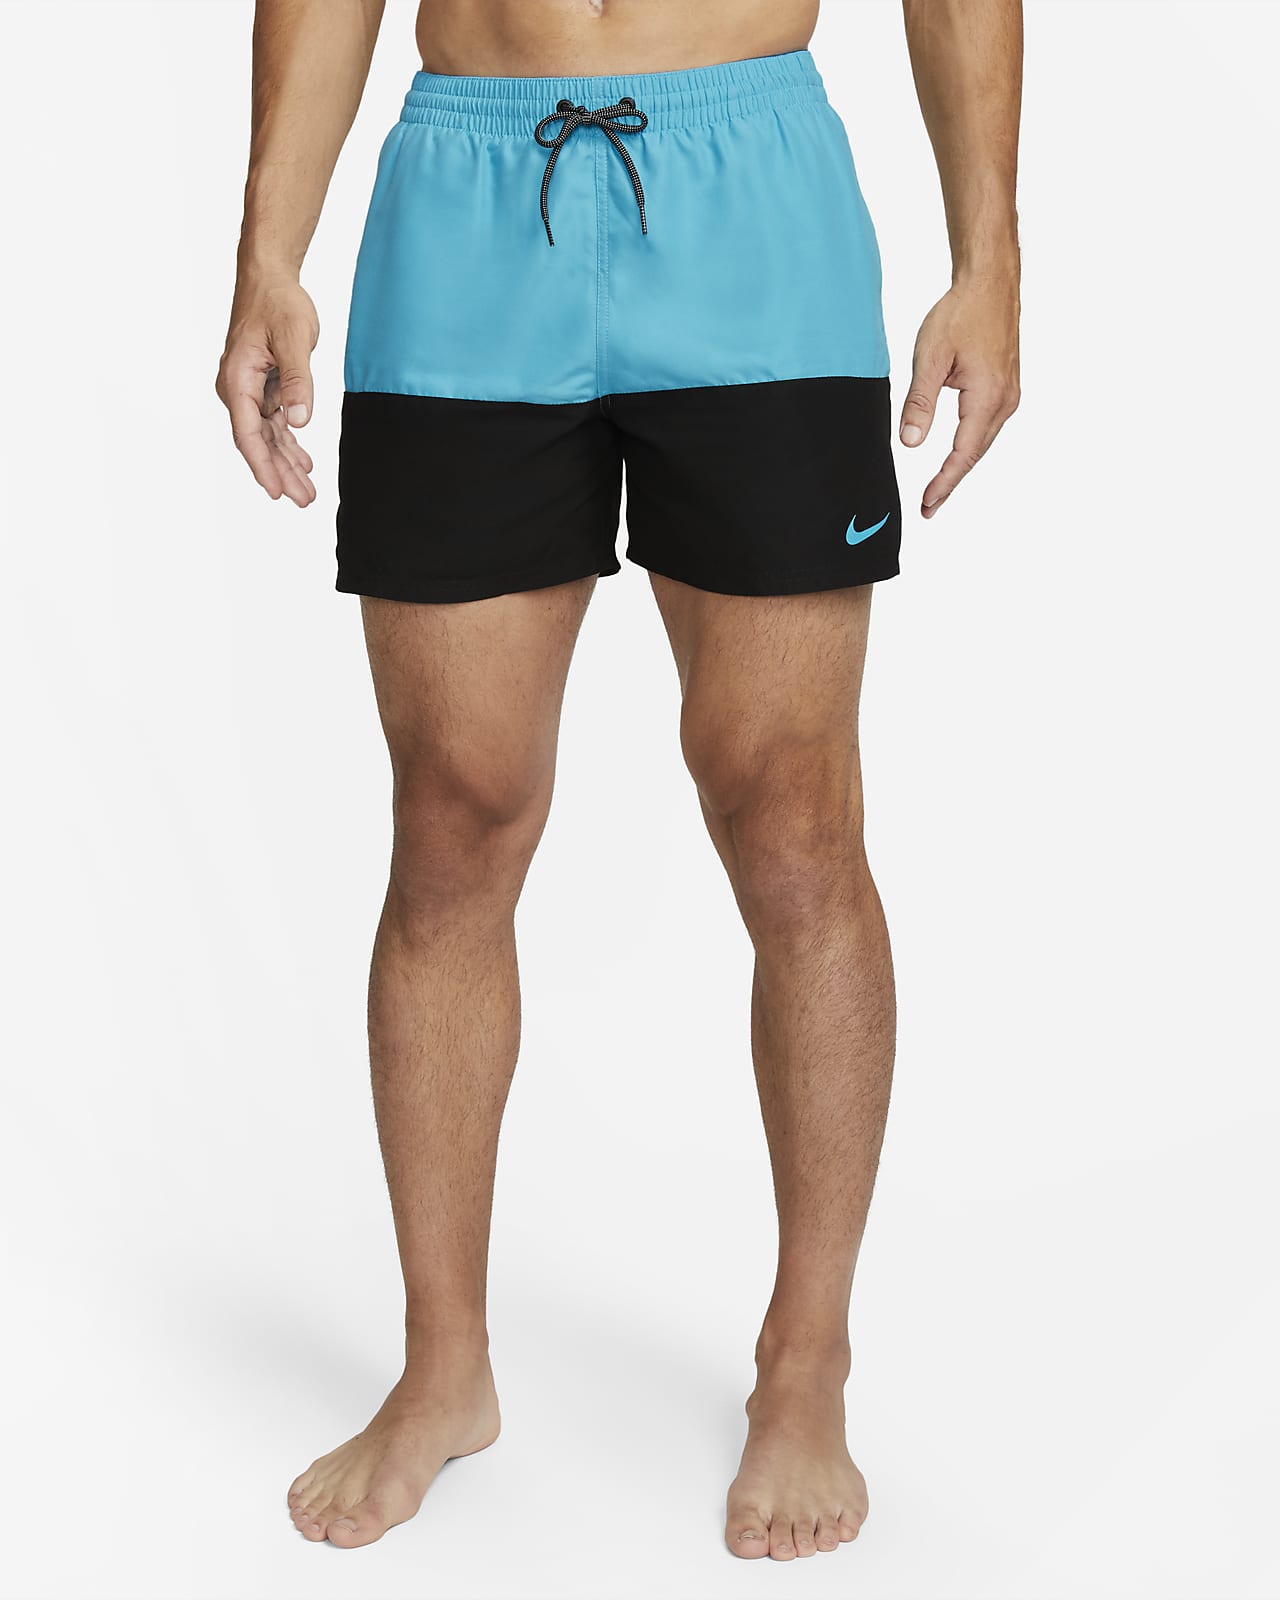 Maak leven warmte leerplan Nike Split Zwembroek voor heren (13 cm). Nike NL